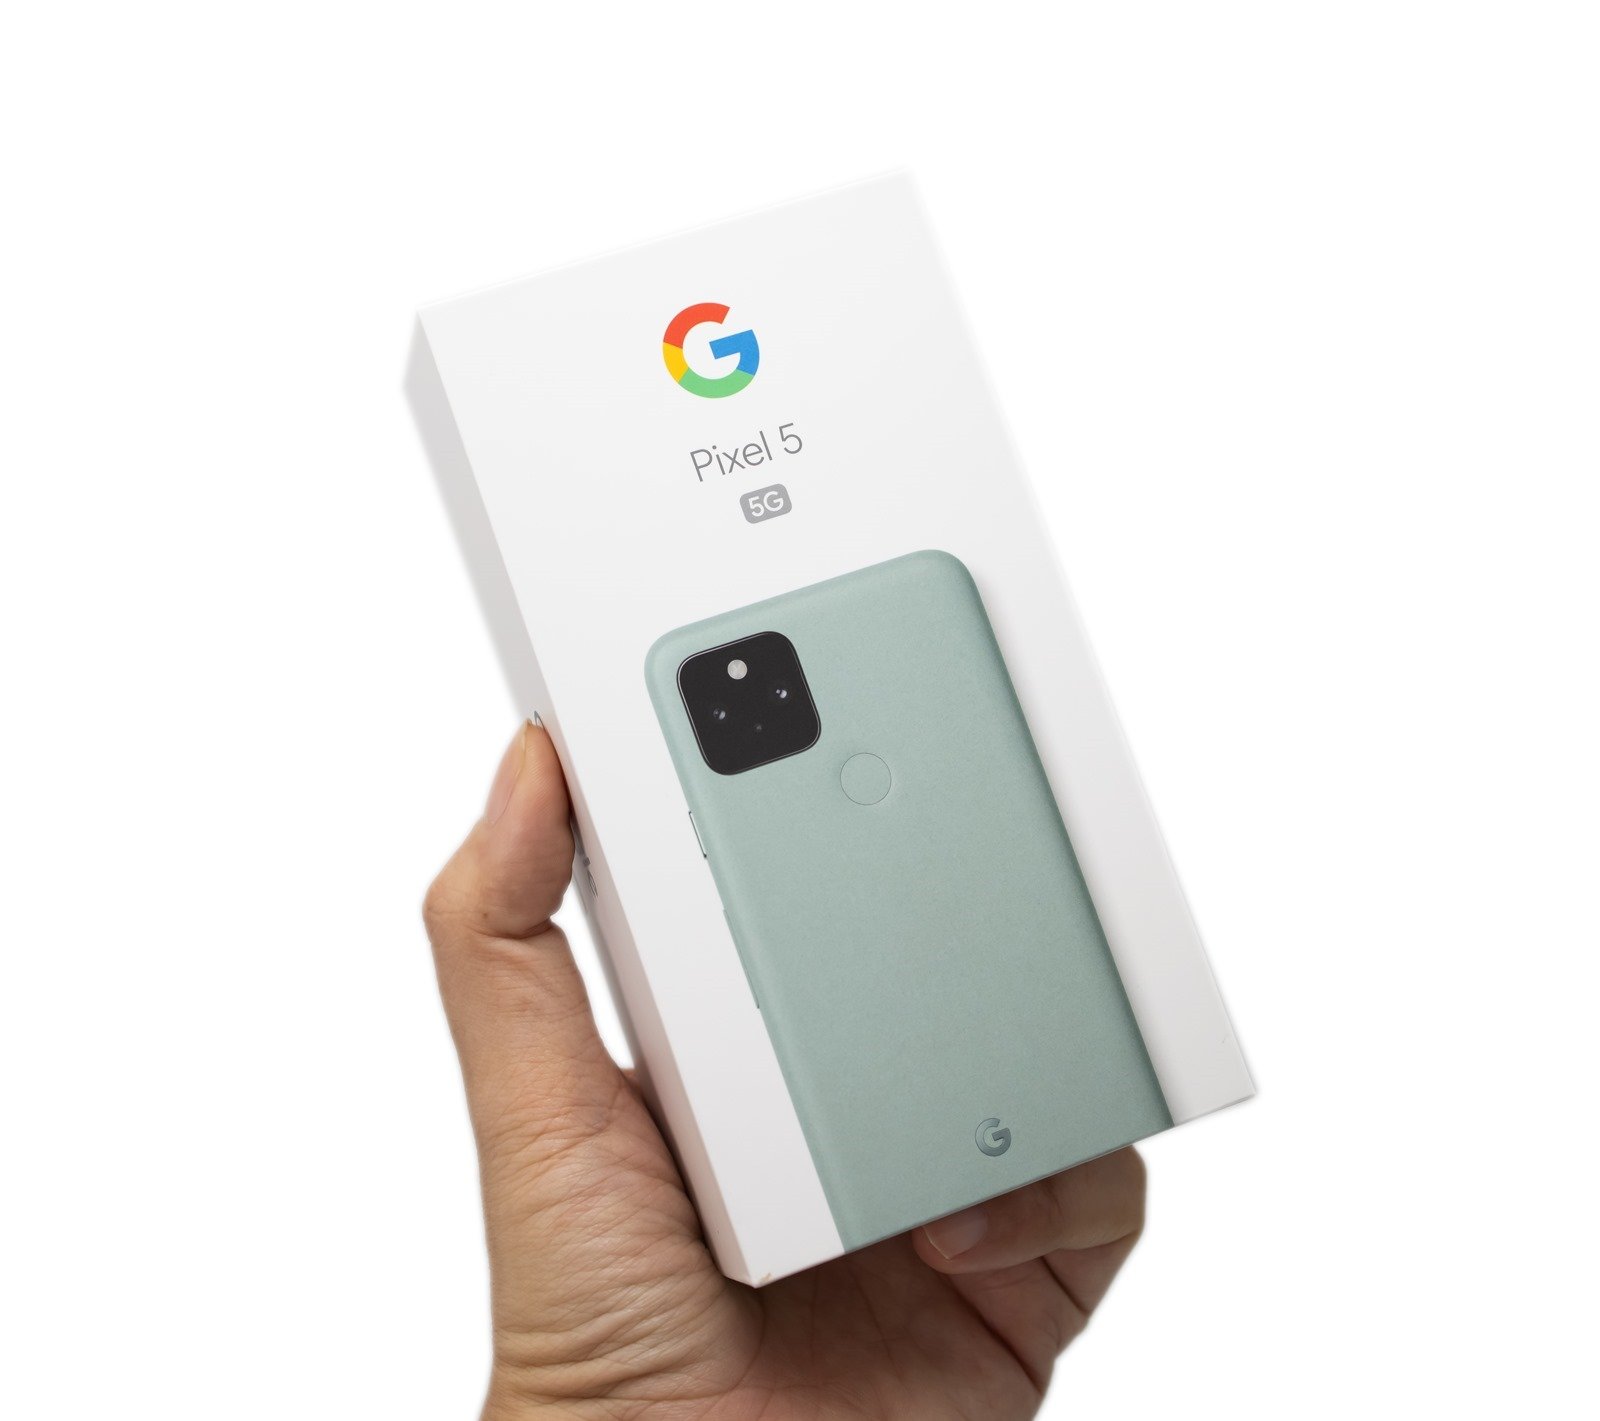 更親民的 Pixel 旗艦機 – Google Pixel 5 灰綠色 (1) 開箱，看看盒中有什麼？ ( Google Pixel 5 Unboxing) 附規格 / 彙整資料 @3C 達人廖阿輝